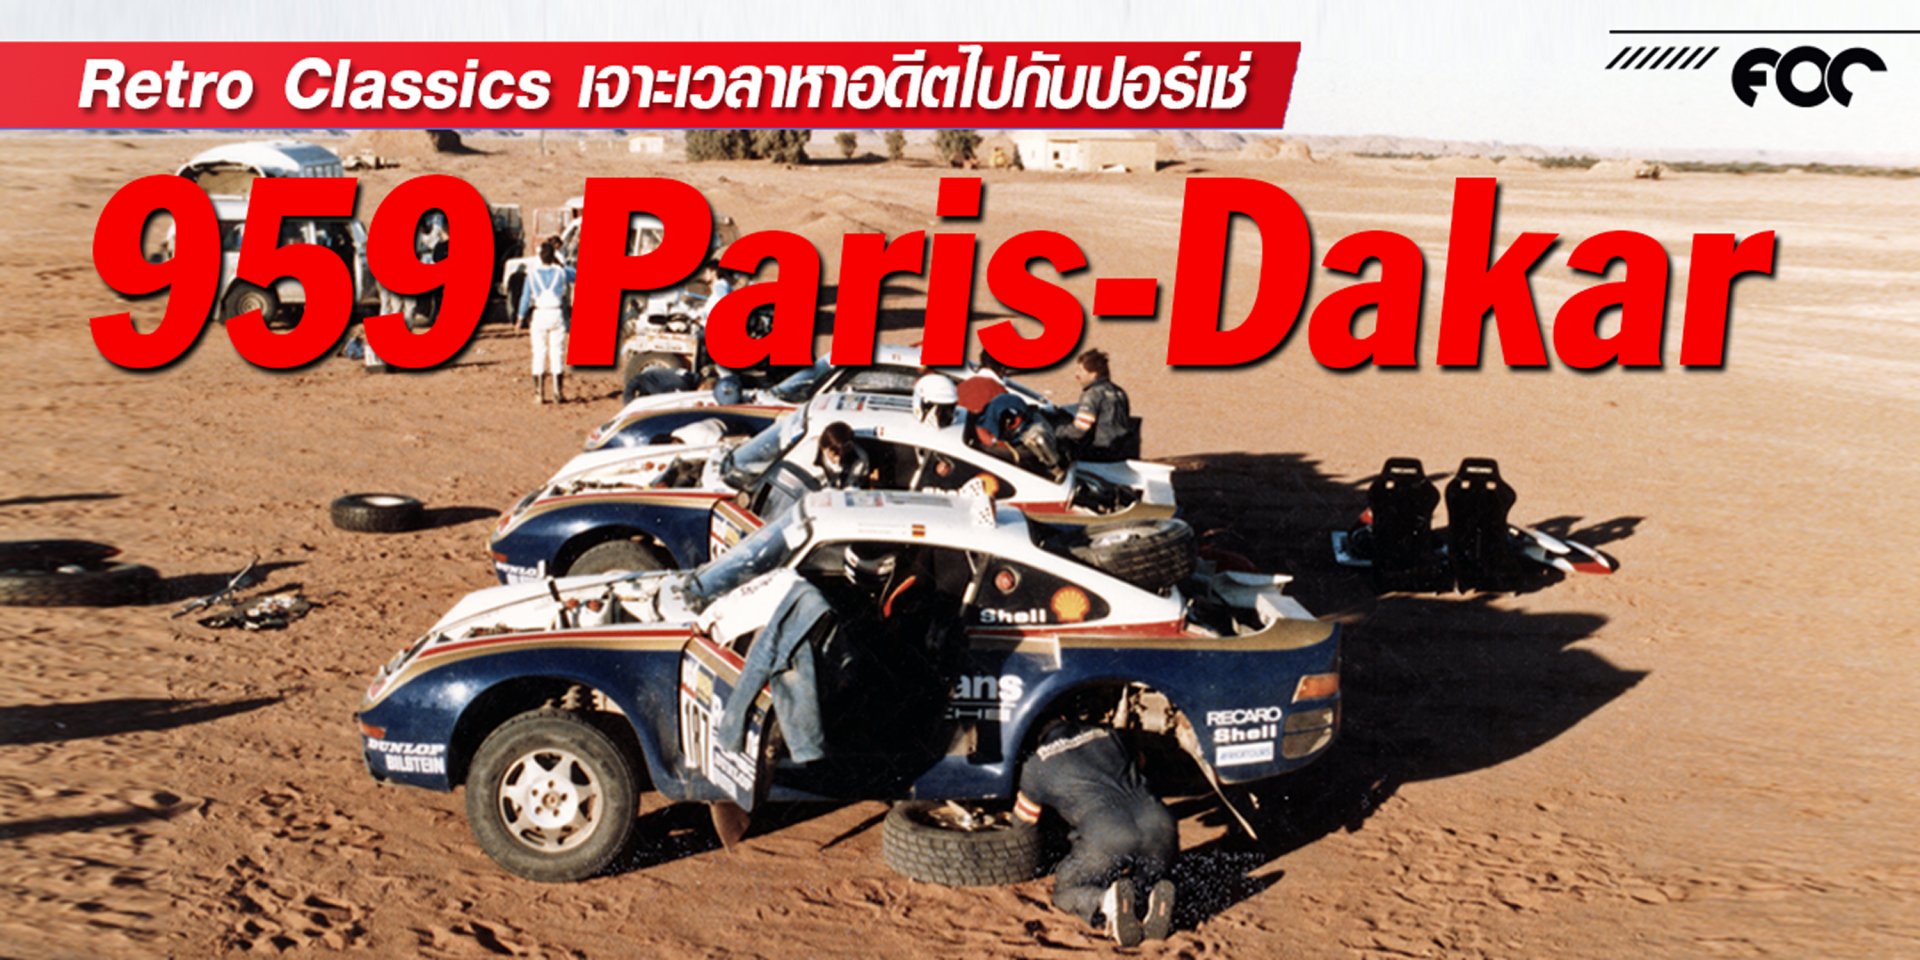 การหวนคืนสู่ภารกิจสำคัญ ย้อนระลึกเกียรติประวัติของปอร์เช่ 959 Paris-Dakar